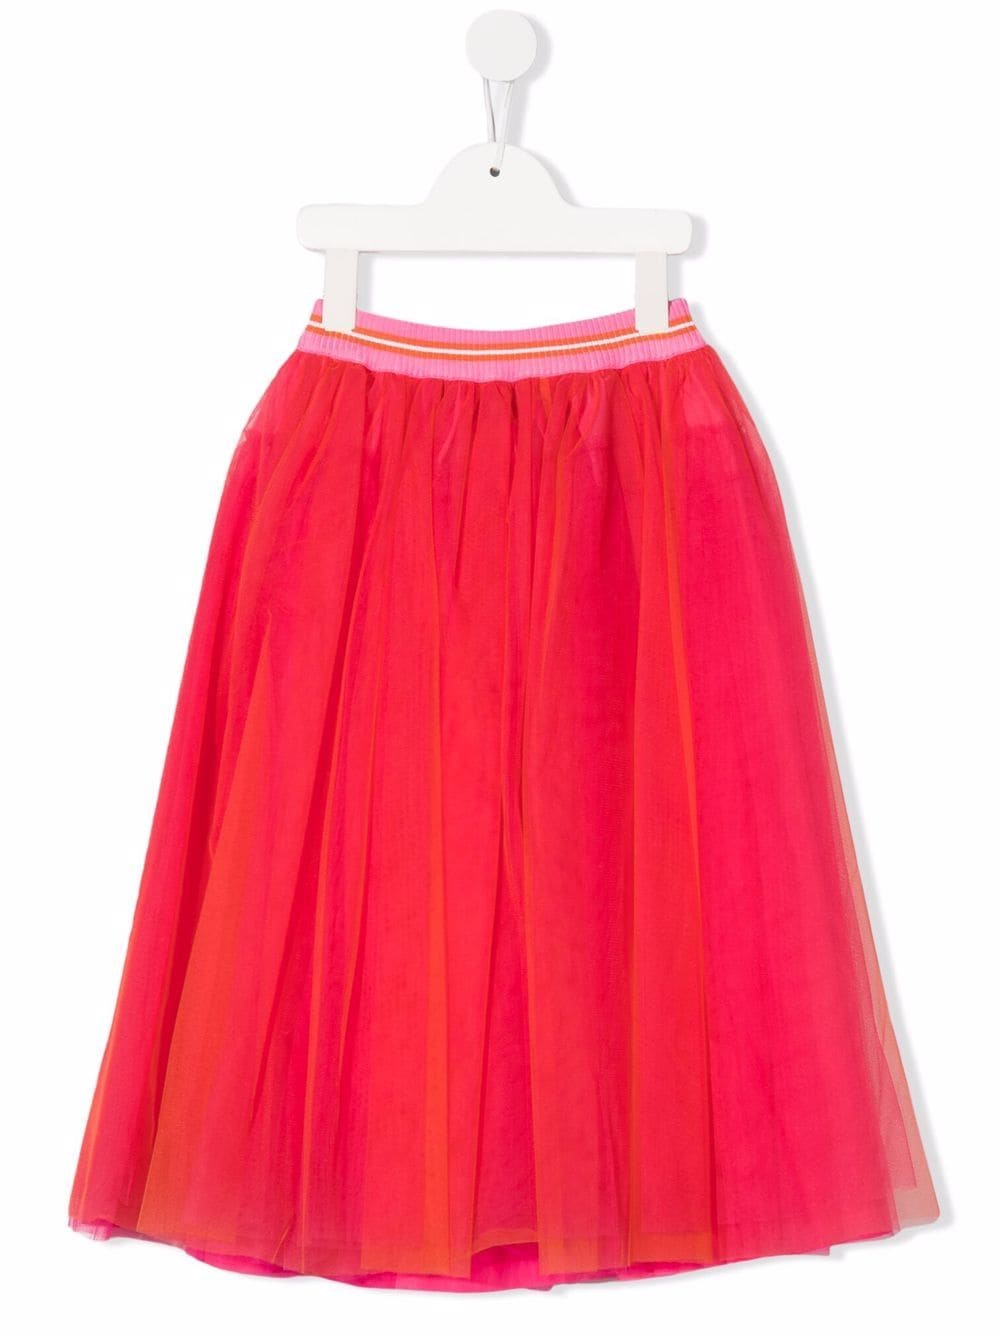 Simonetta Kids Orange Tulle Skirt